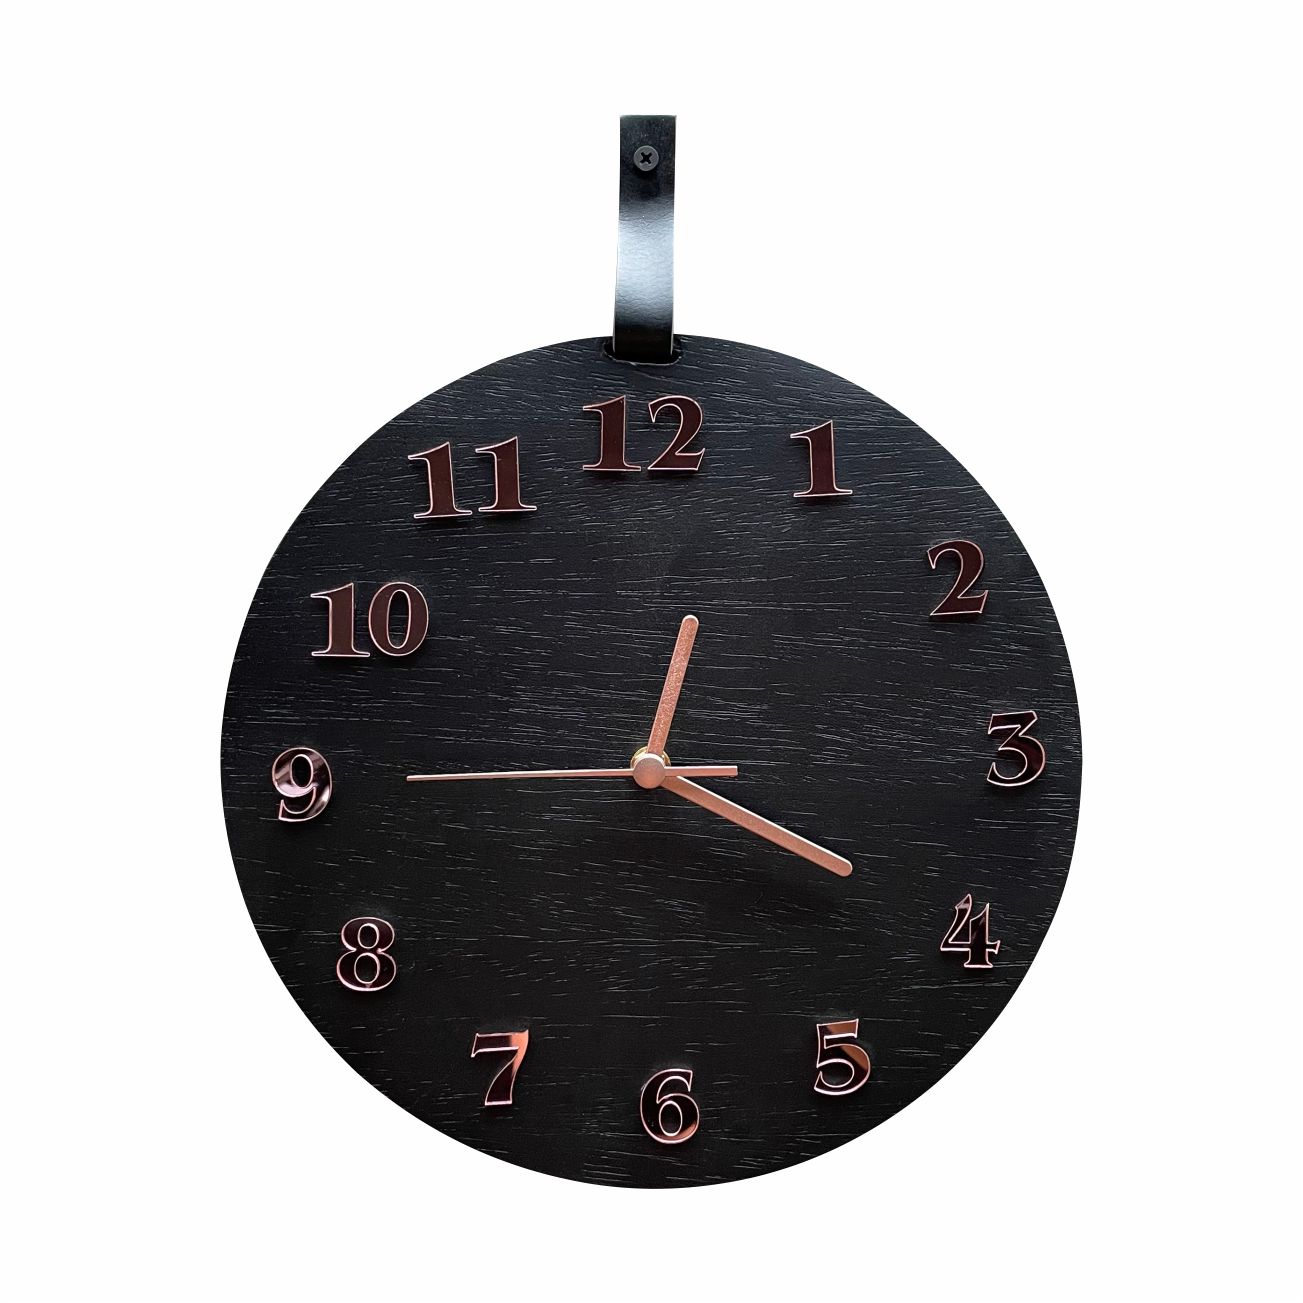 Relógio De Parede Decorativo Moderno Preto Fosco e Rosê